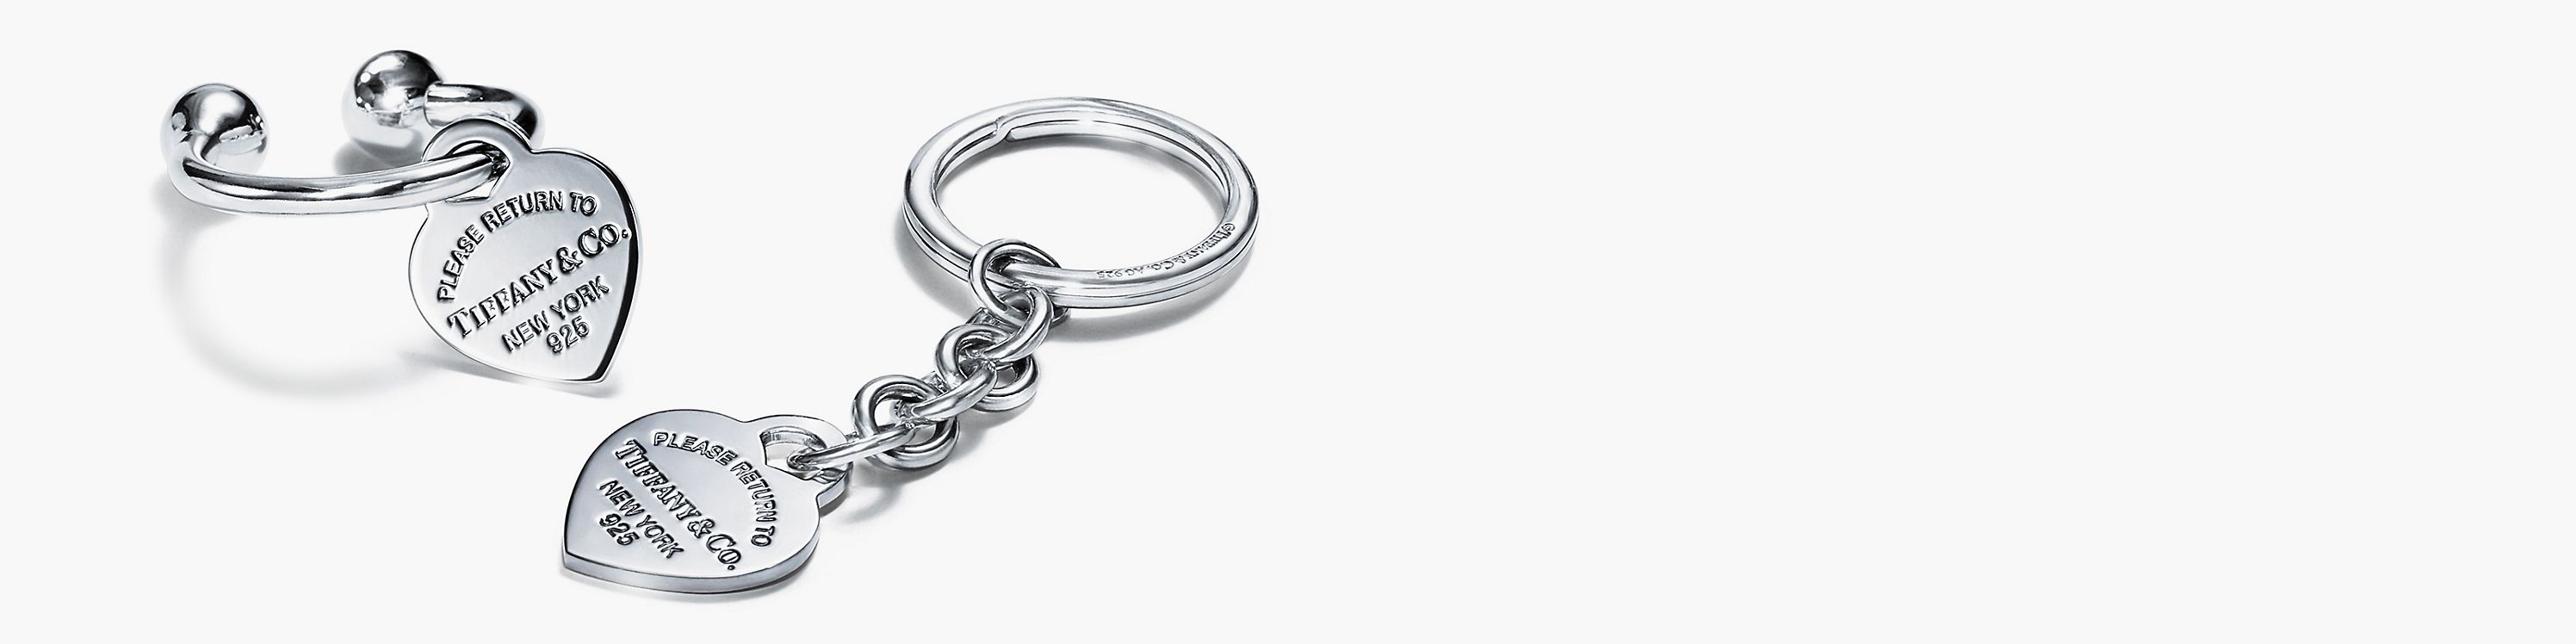 Посмотреть кольца для ключей Tiffany Key Rings